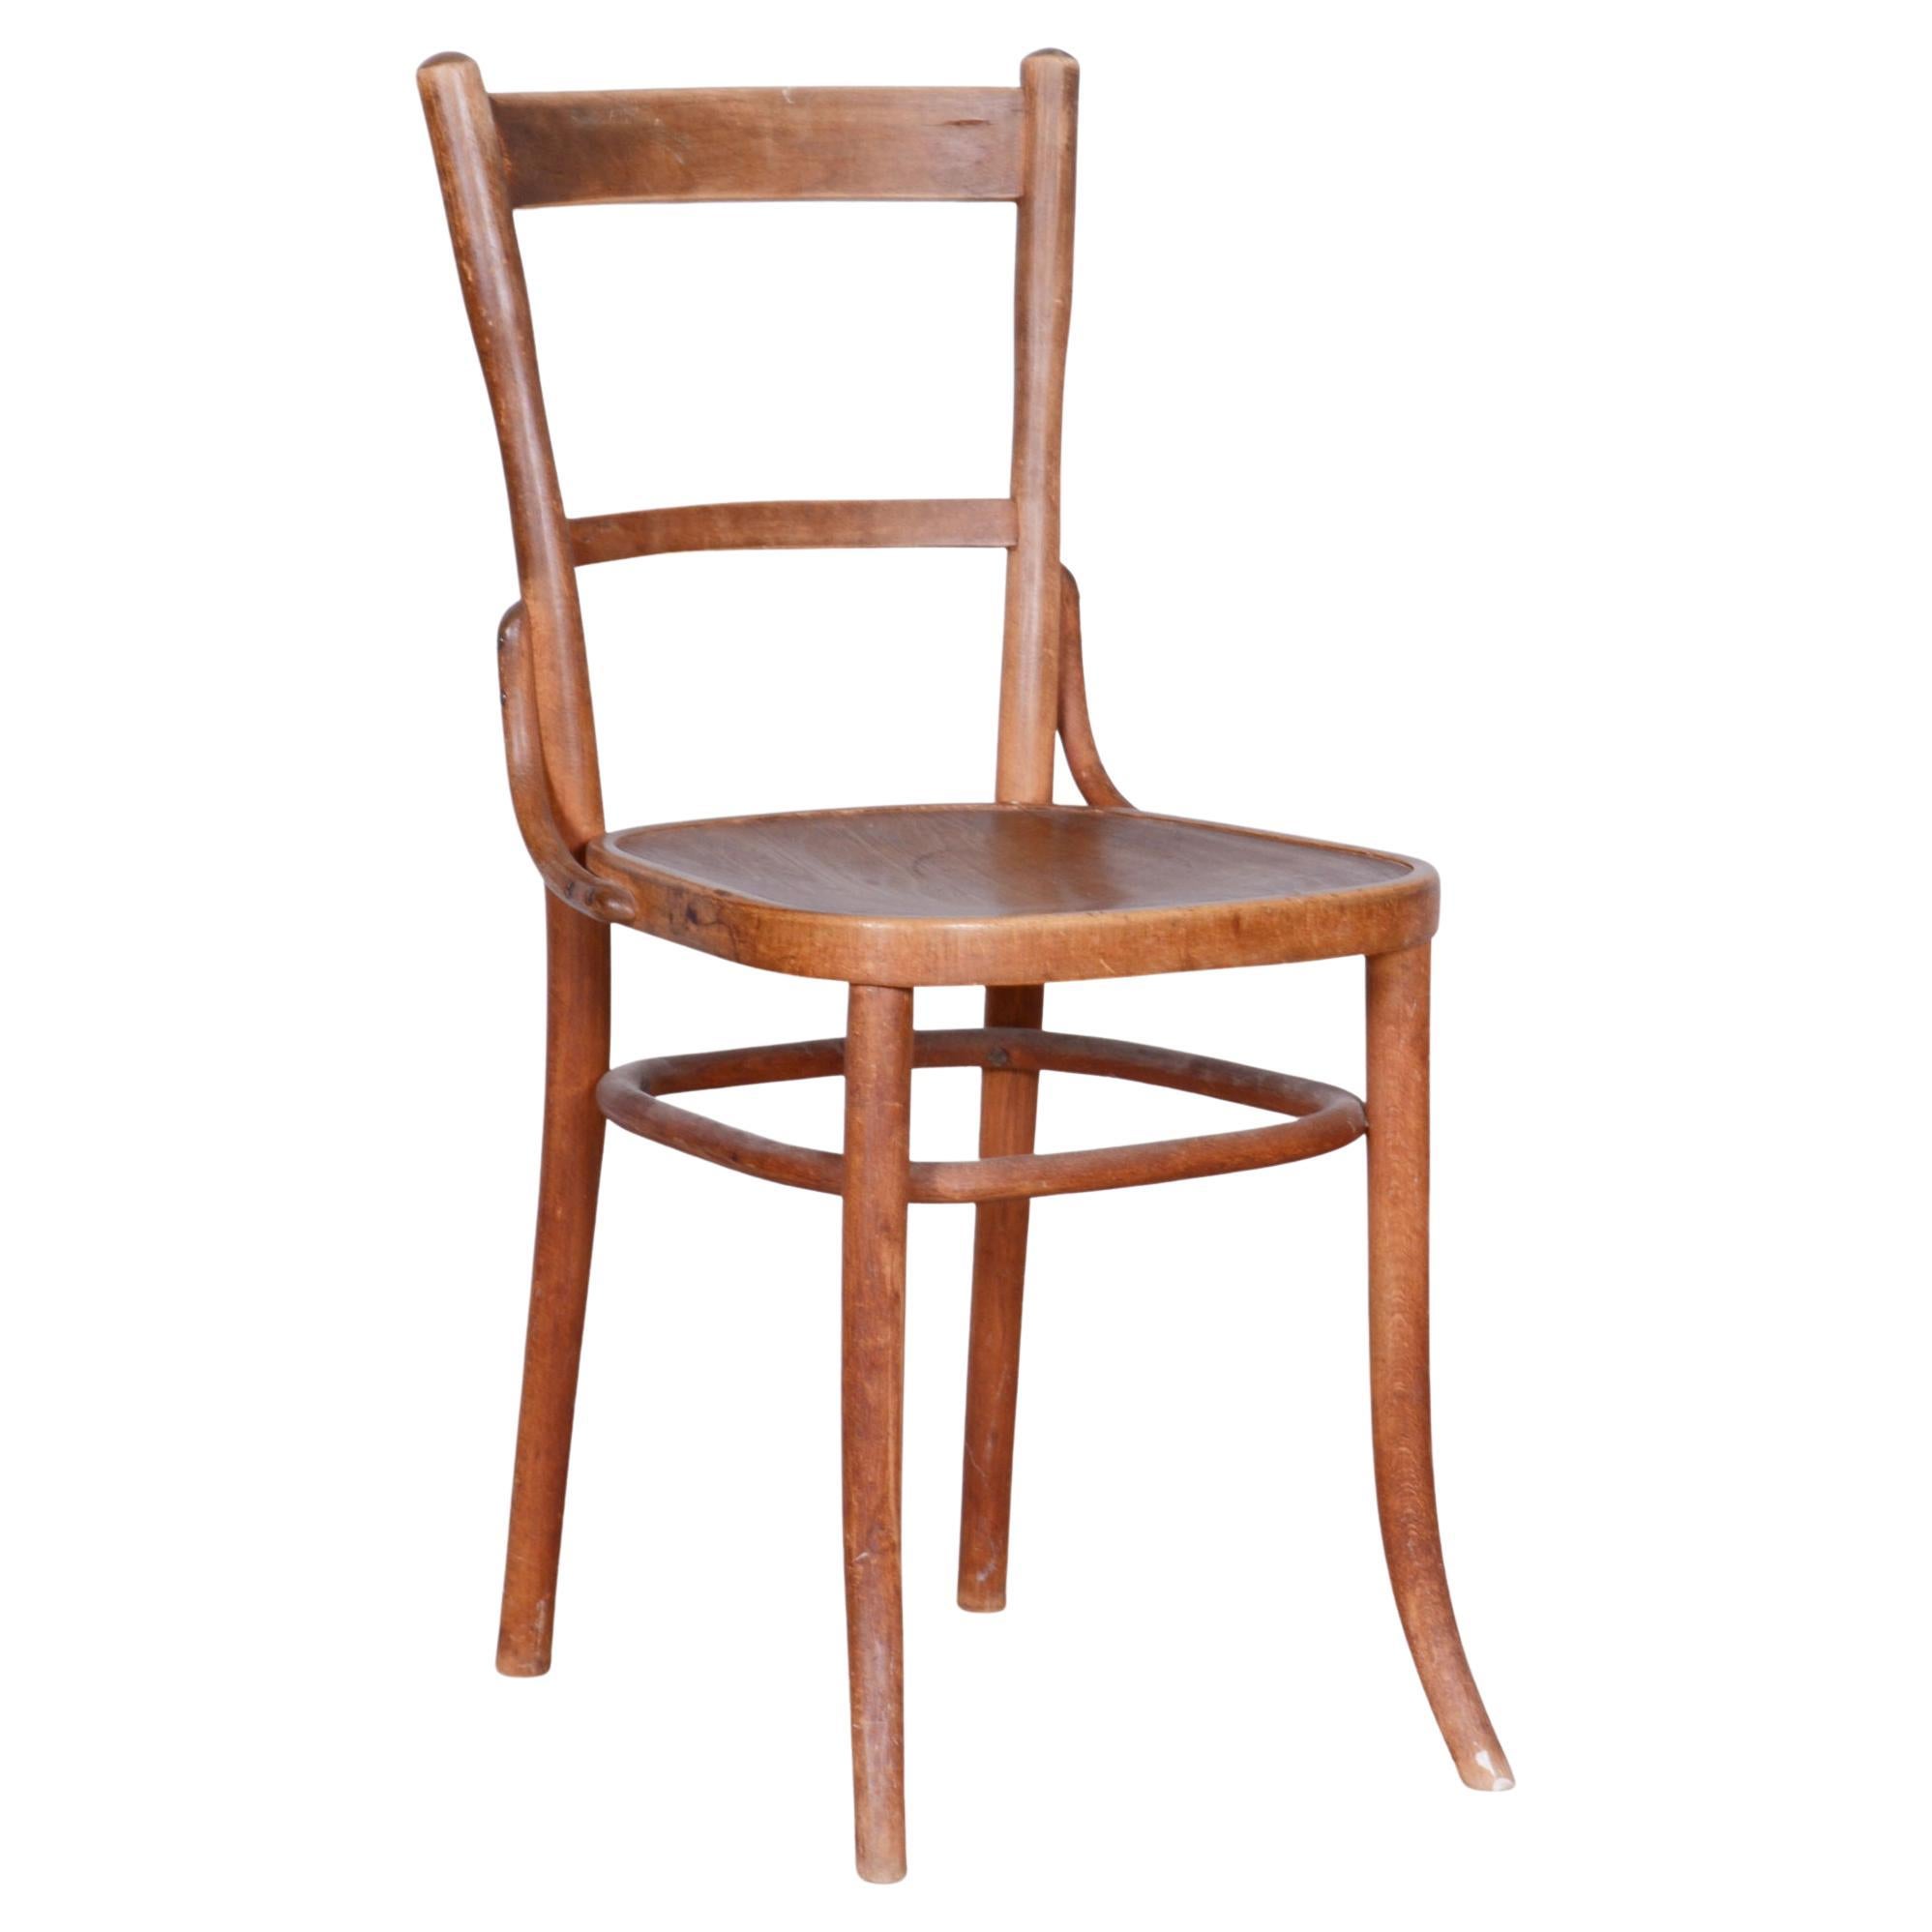 Original Art-Déco-Stuhl aus Buche, Fischel, Tischdekoration, Tschechien, 1920er Jahre